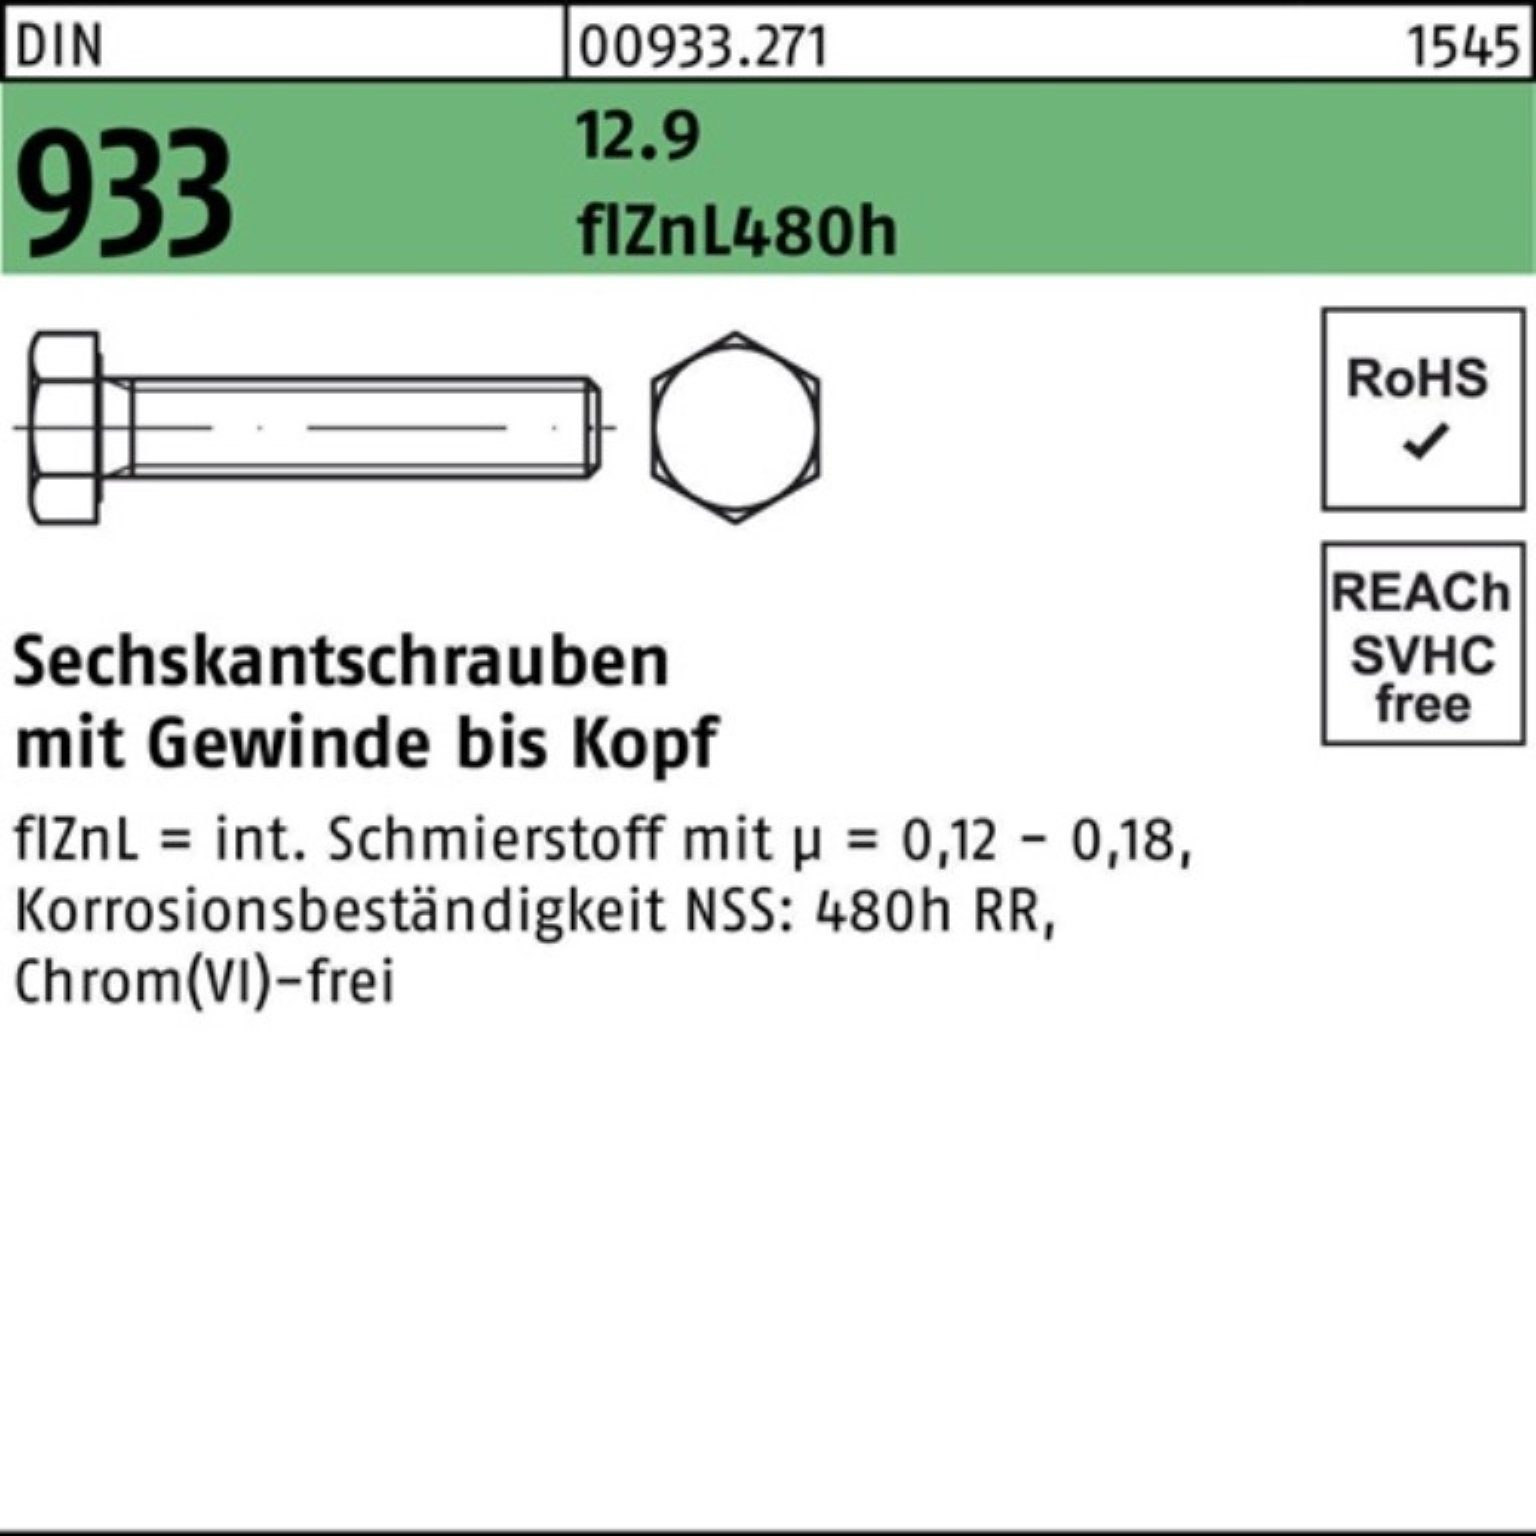 VG Pack 200er DIN Reyher zinklam flZnL Sechskantschraube 25 12.9 Sechskantschraube 933 480h M8x